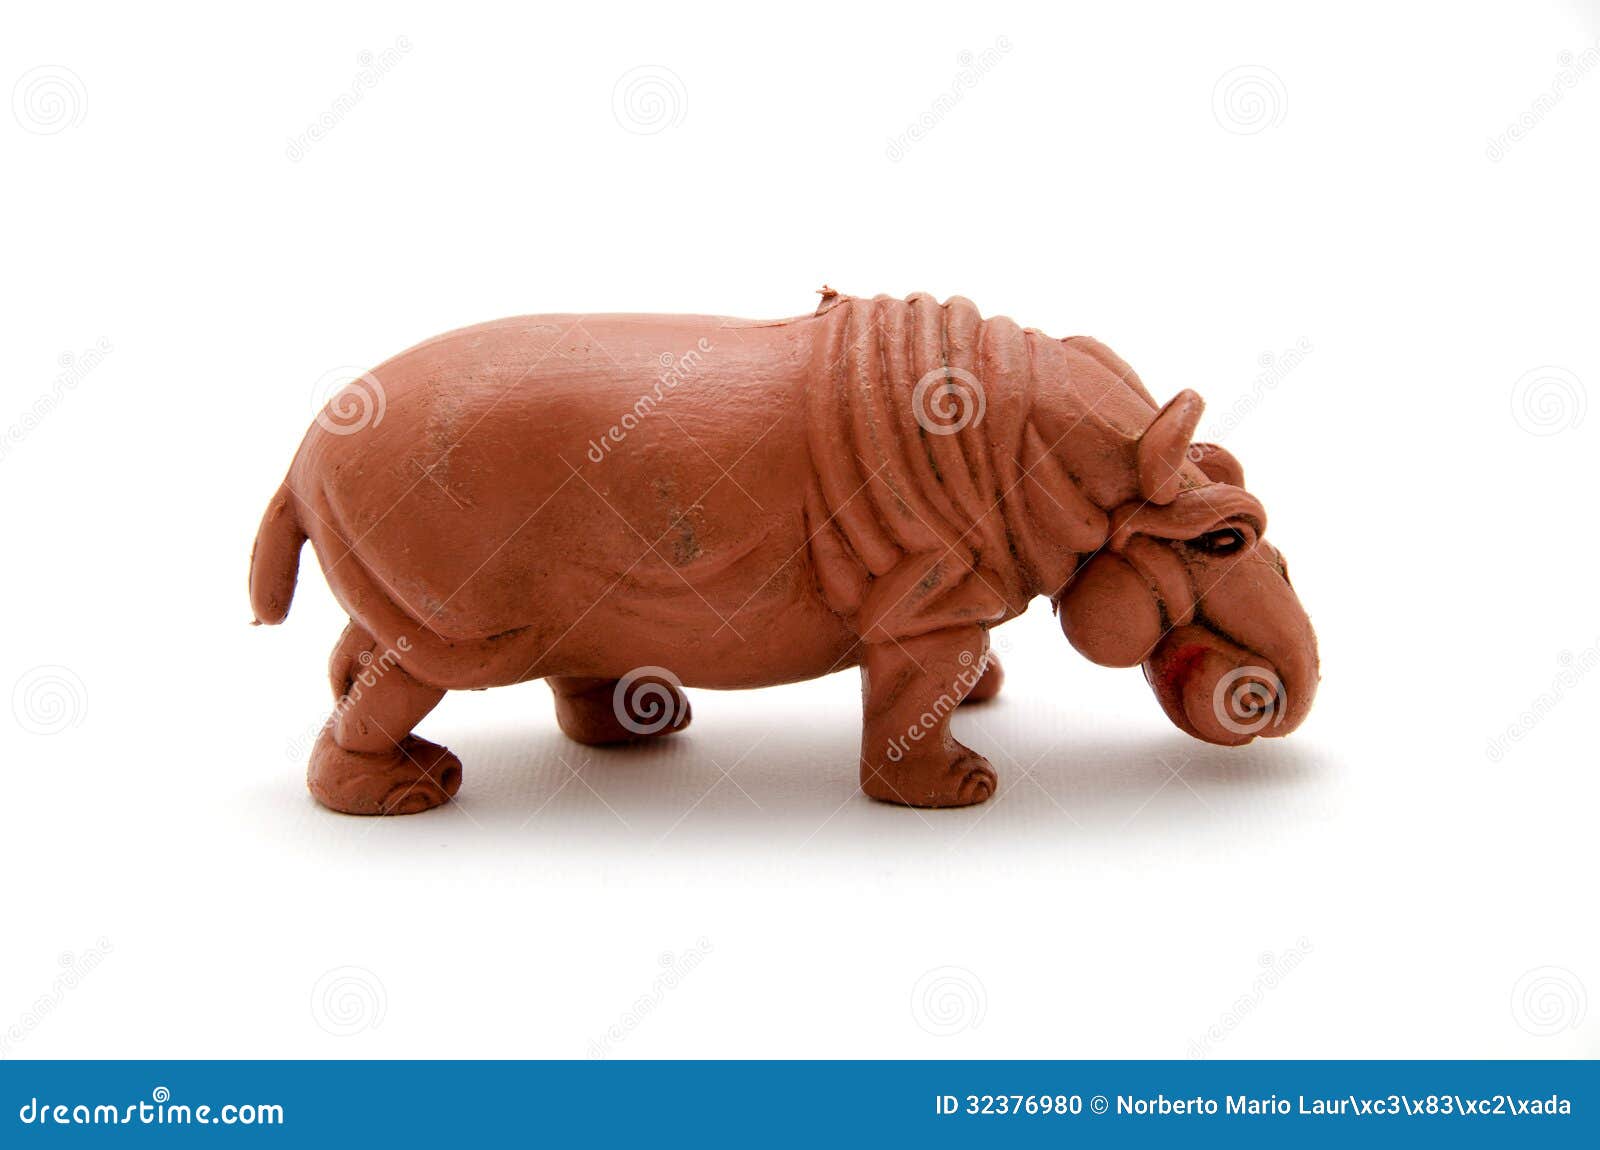 plastic hippo